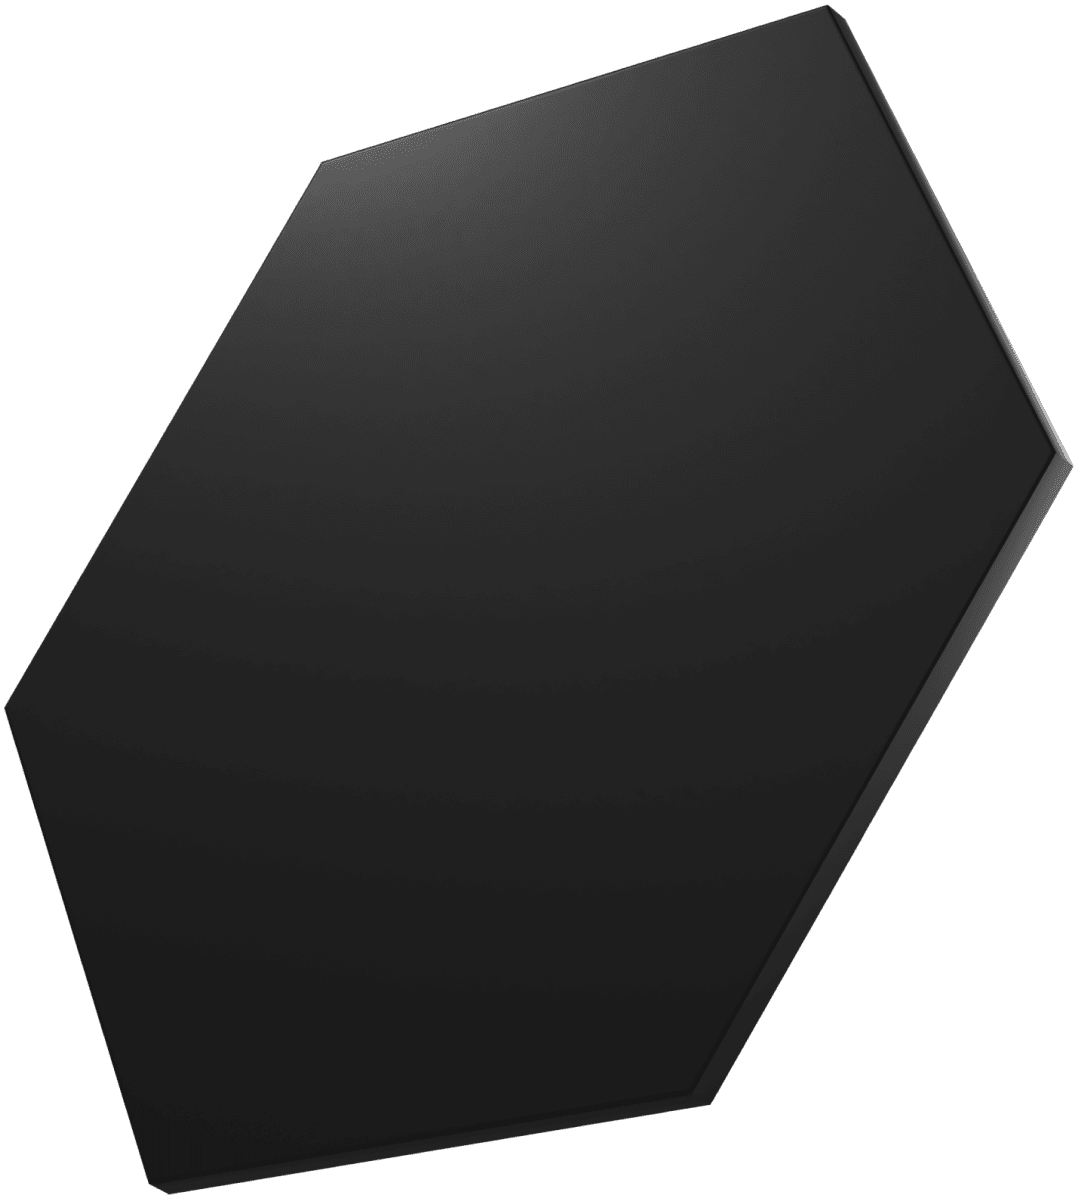 Nanoleaf Shapes Black Hexagon